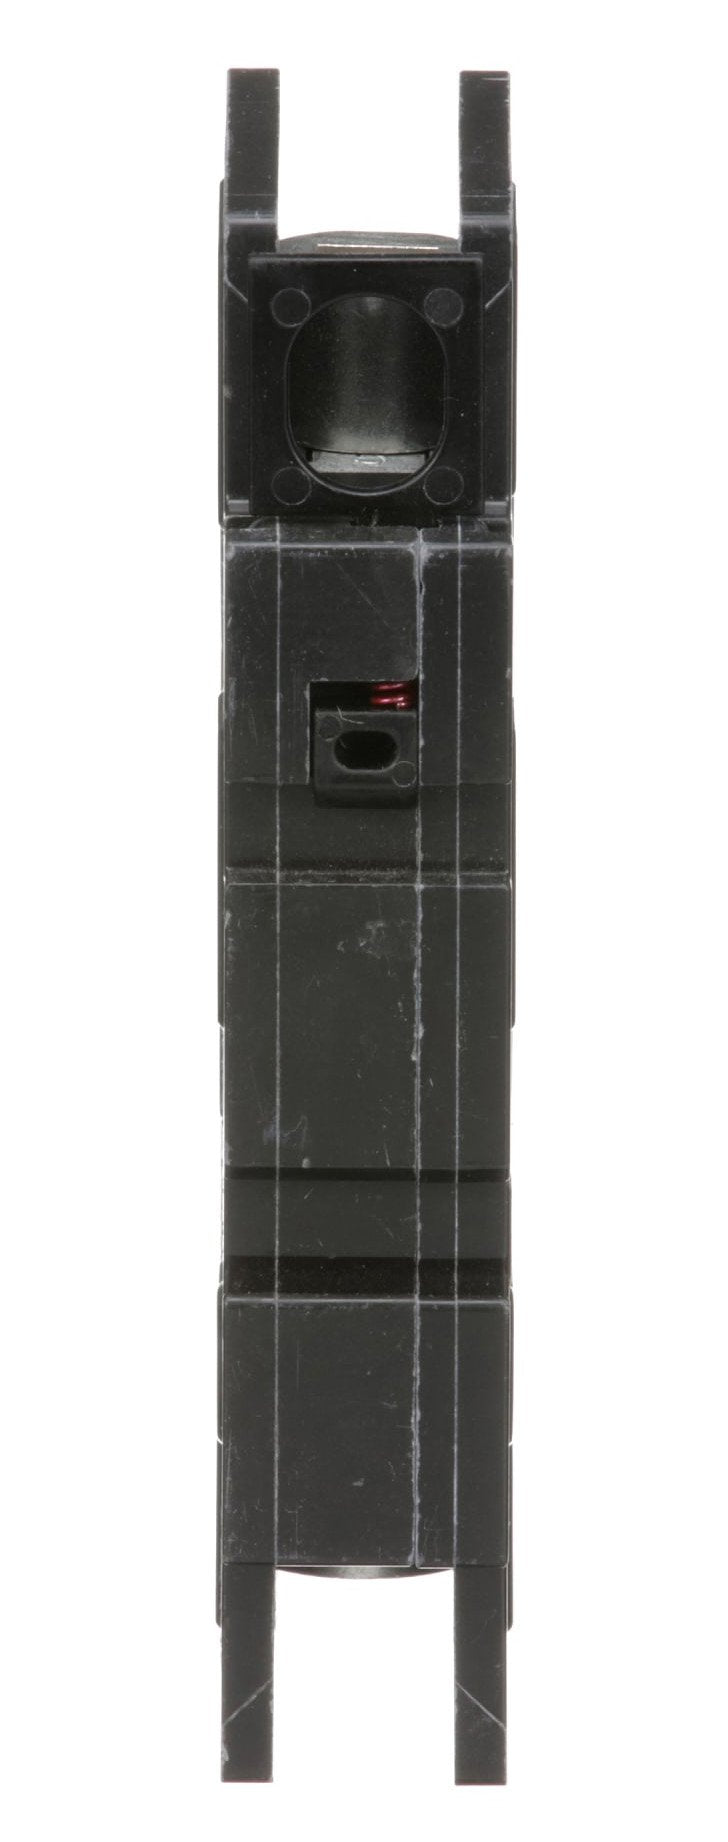 QOU125 - Square D - 25 Amp Circuit Breaker